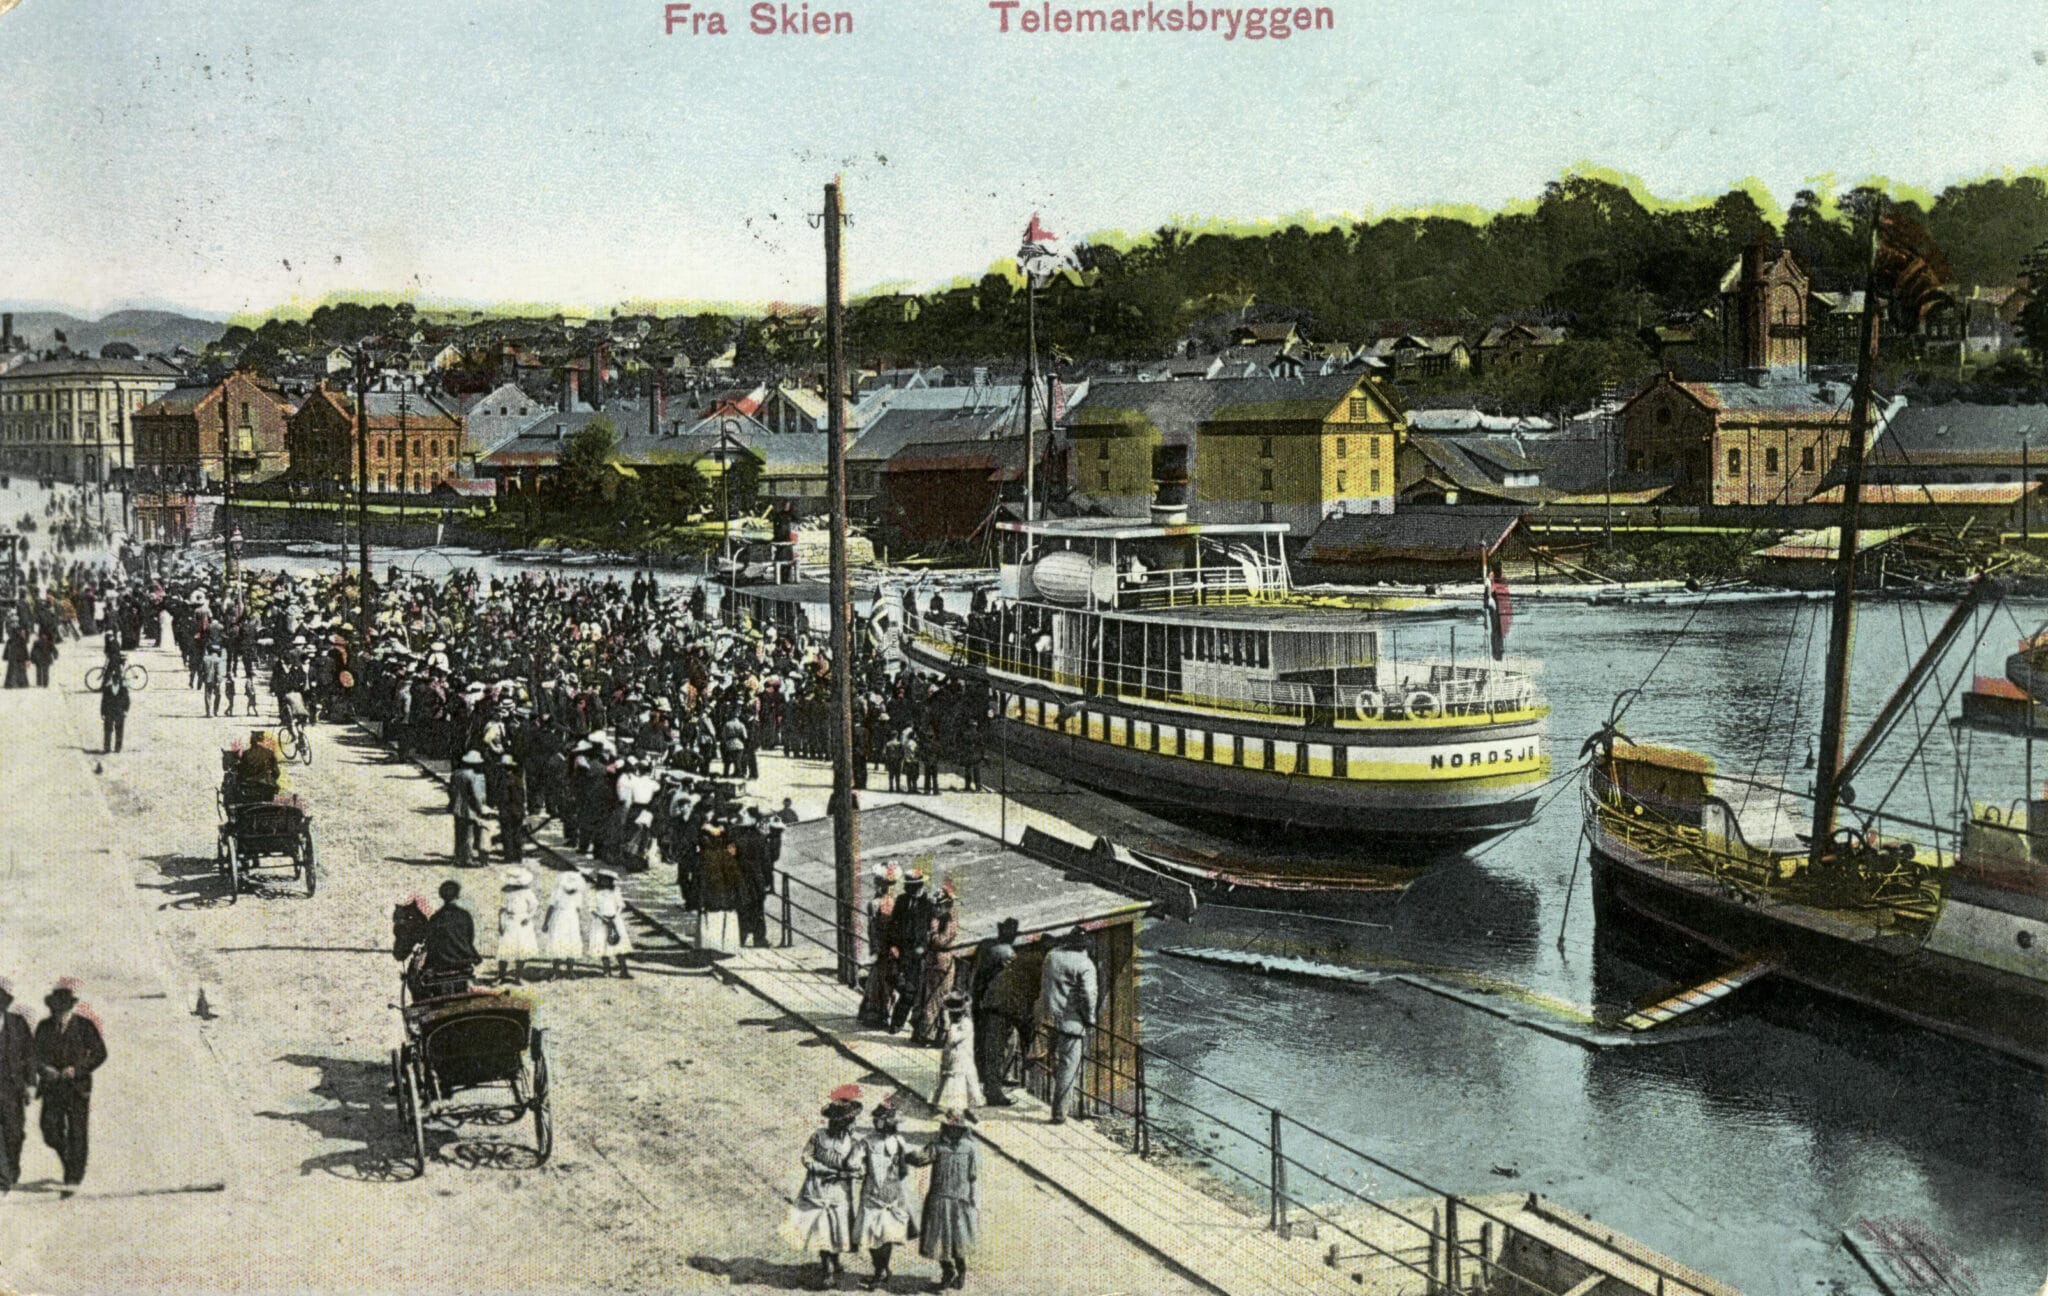 FOLKSOMT: Ved Hjellebrygga har folk gått om bord i båtene som har seilt på kanalen, siden brygga ble bygd i 1900. Sommeren 1906 gikk det båt fra Skien til Dalen klokka 7.15 og 14.50 alle hverdager. I tillegg var det båtruter til Gvarv og Heddal (Notodden).